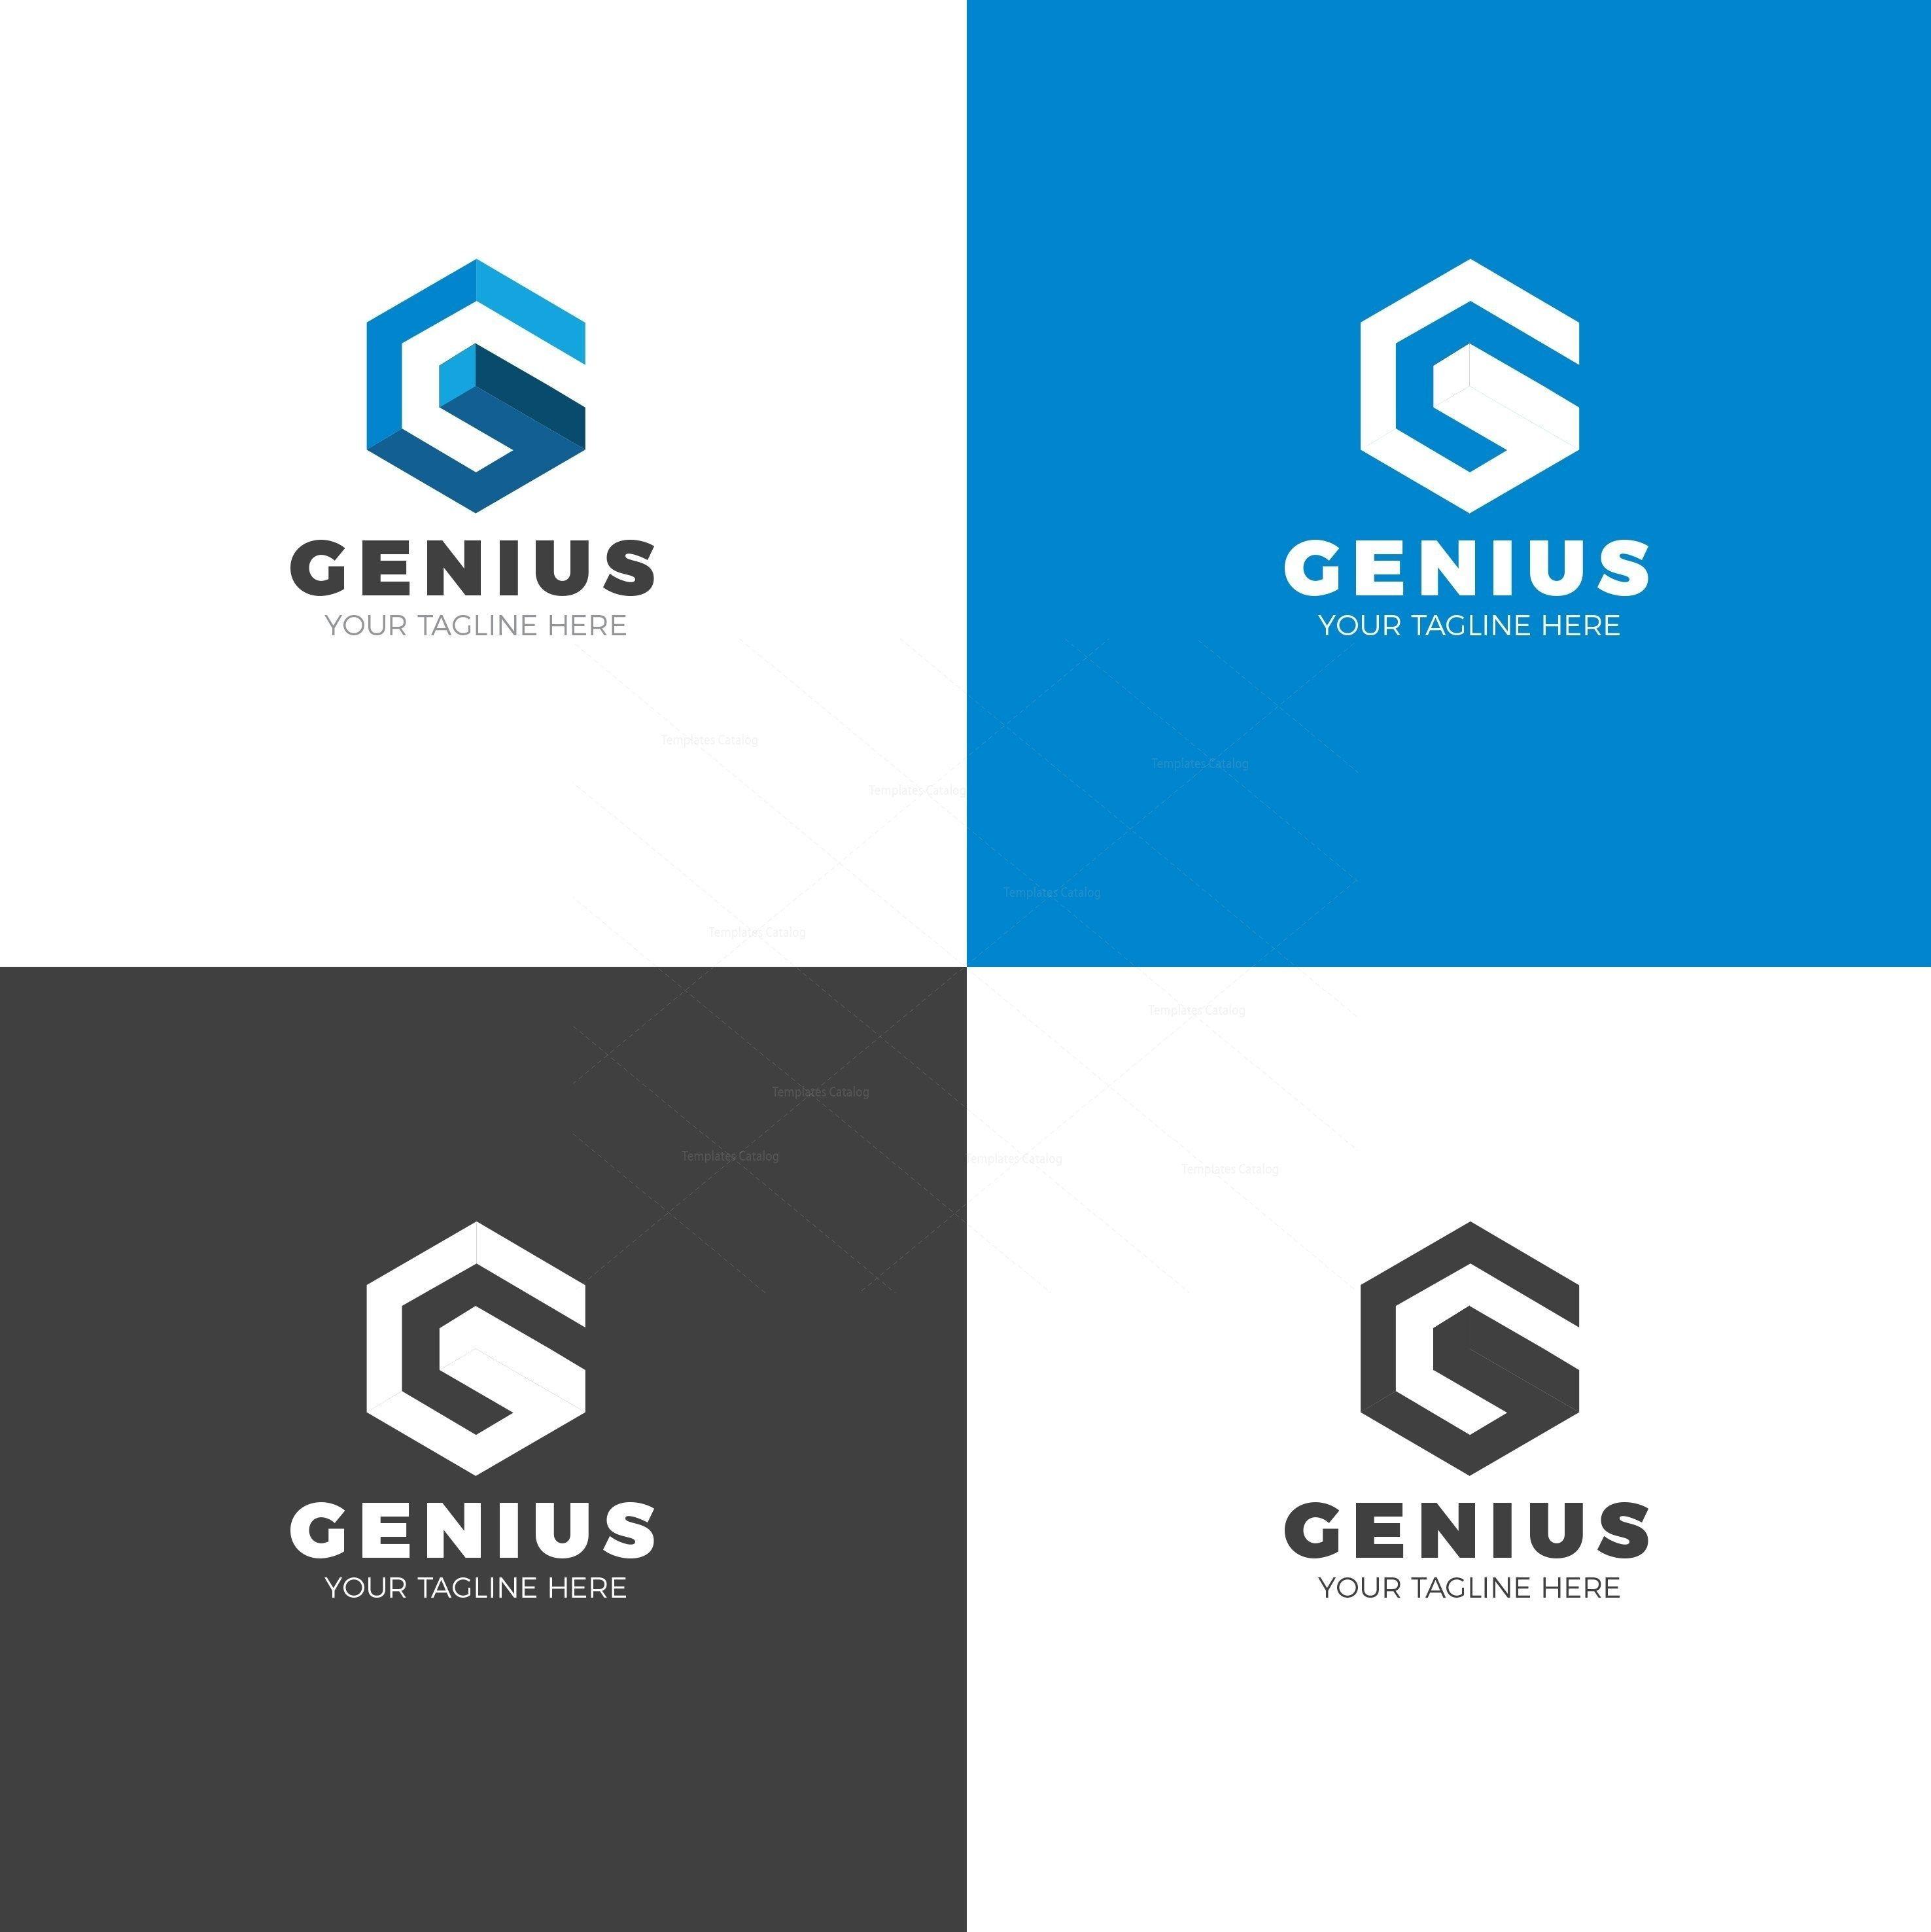 Genius Logo - Genius Creative Logo Design Template 001747